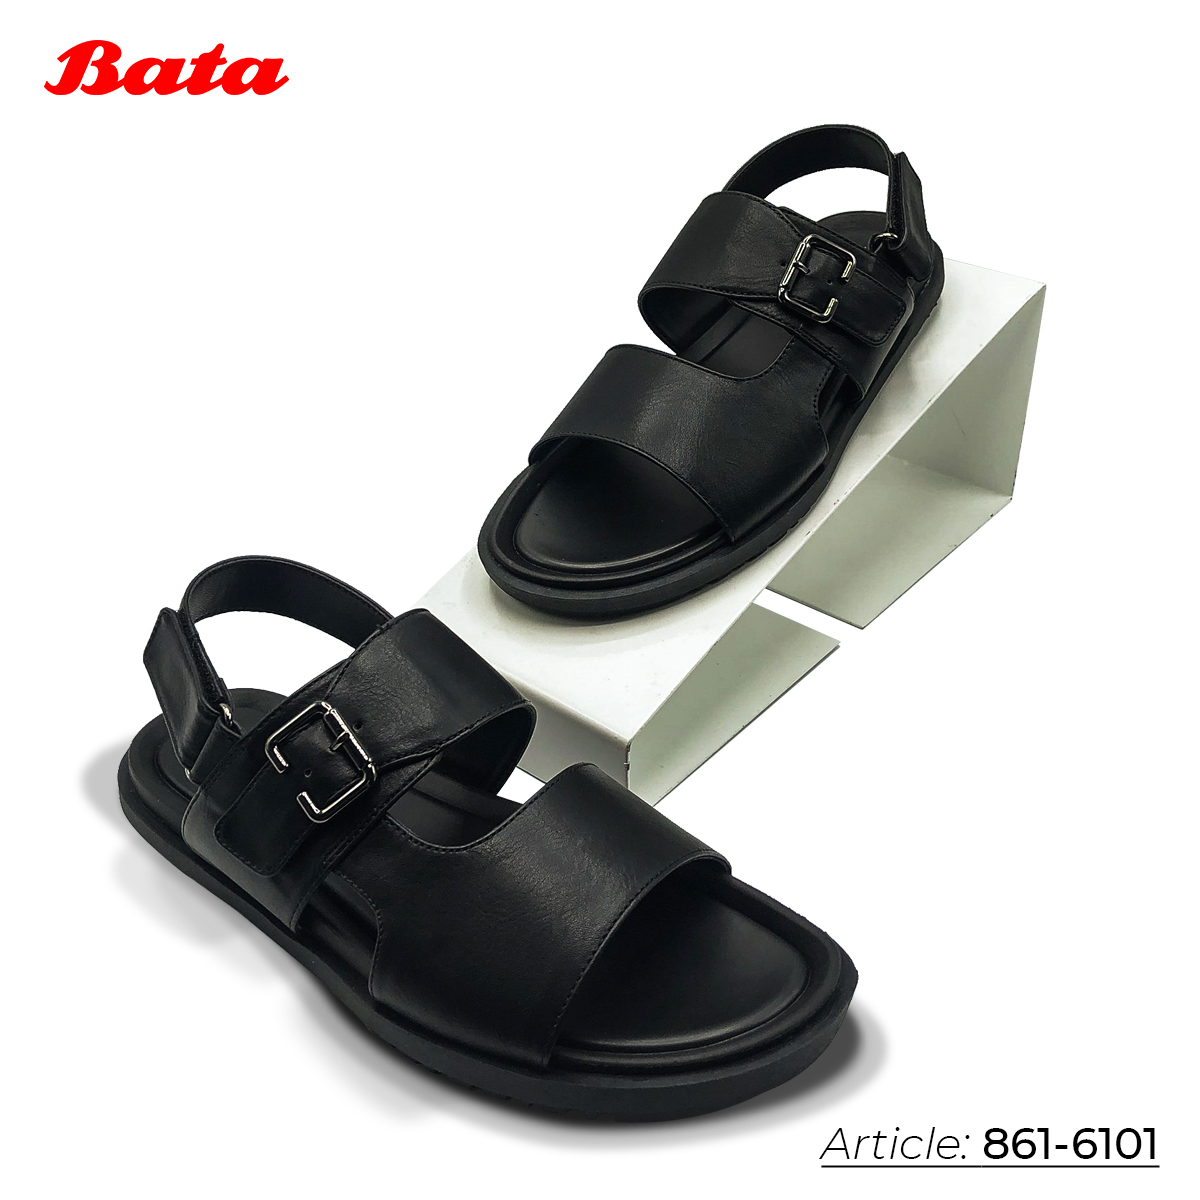 Sandal nam màu đen Thương hiệu Bata 861-6101